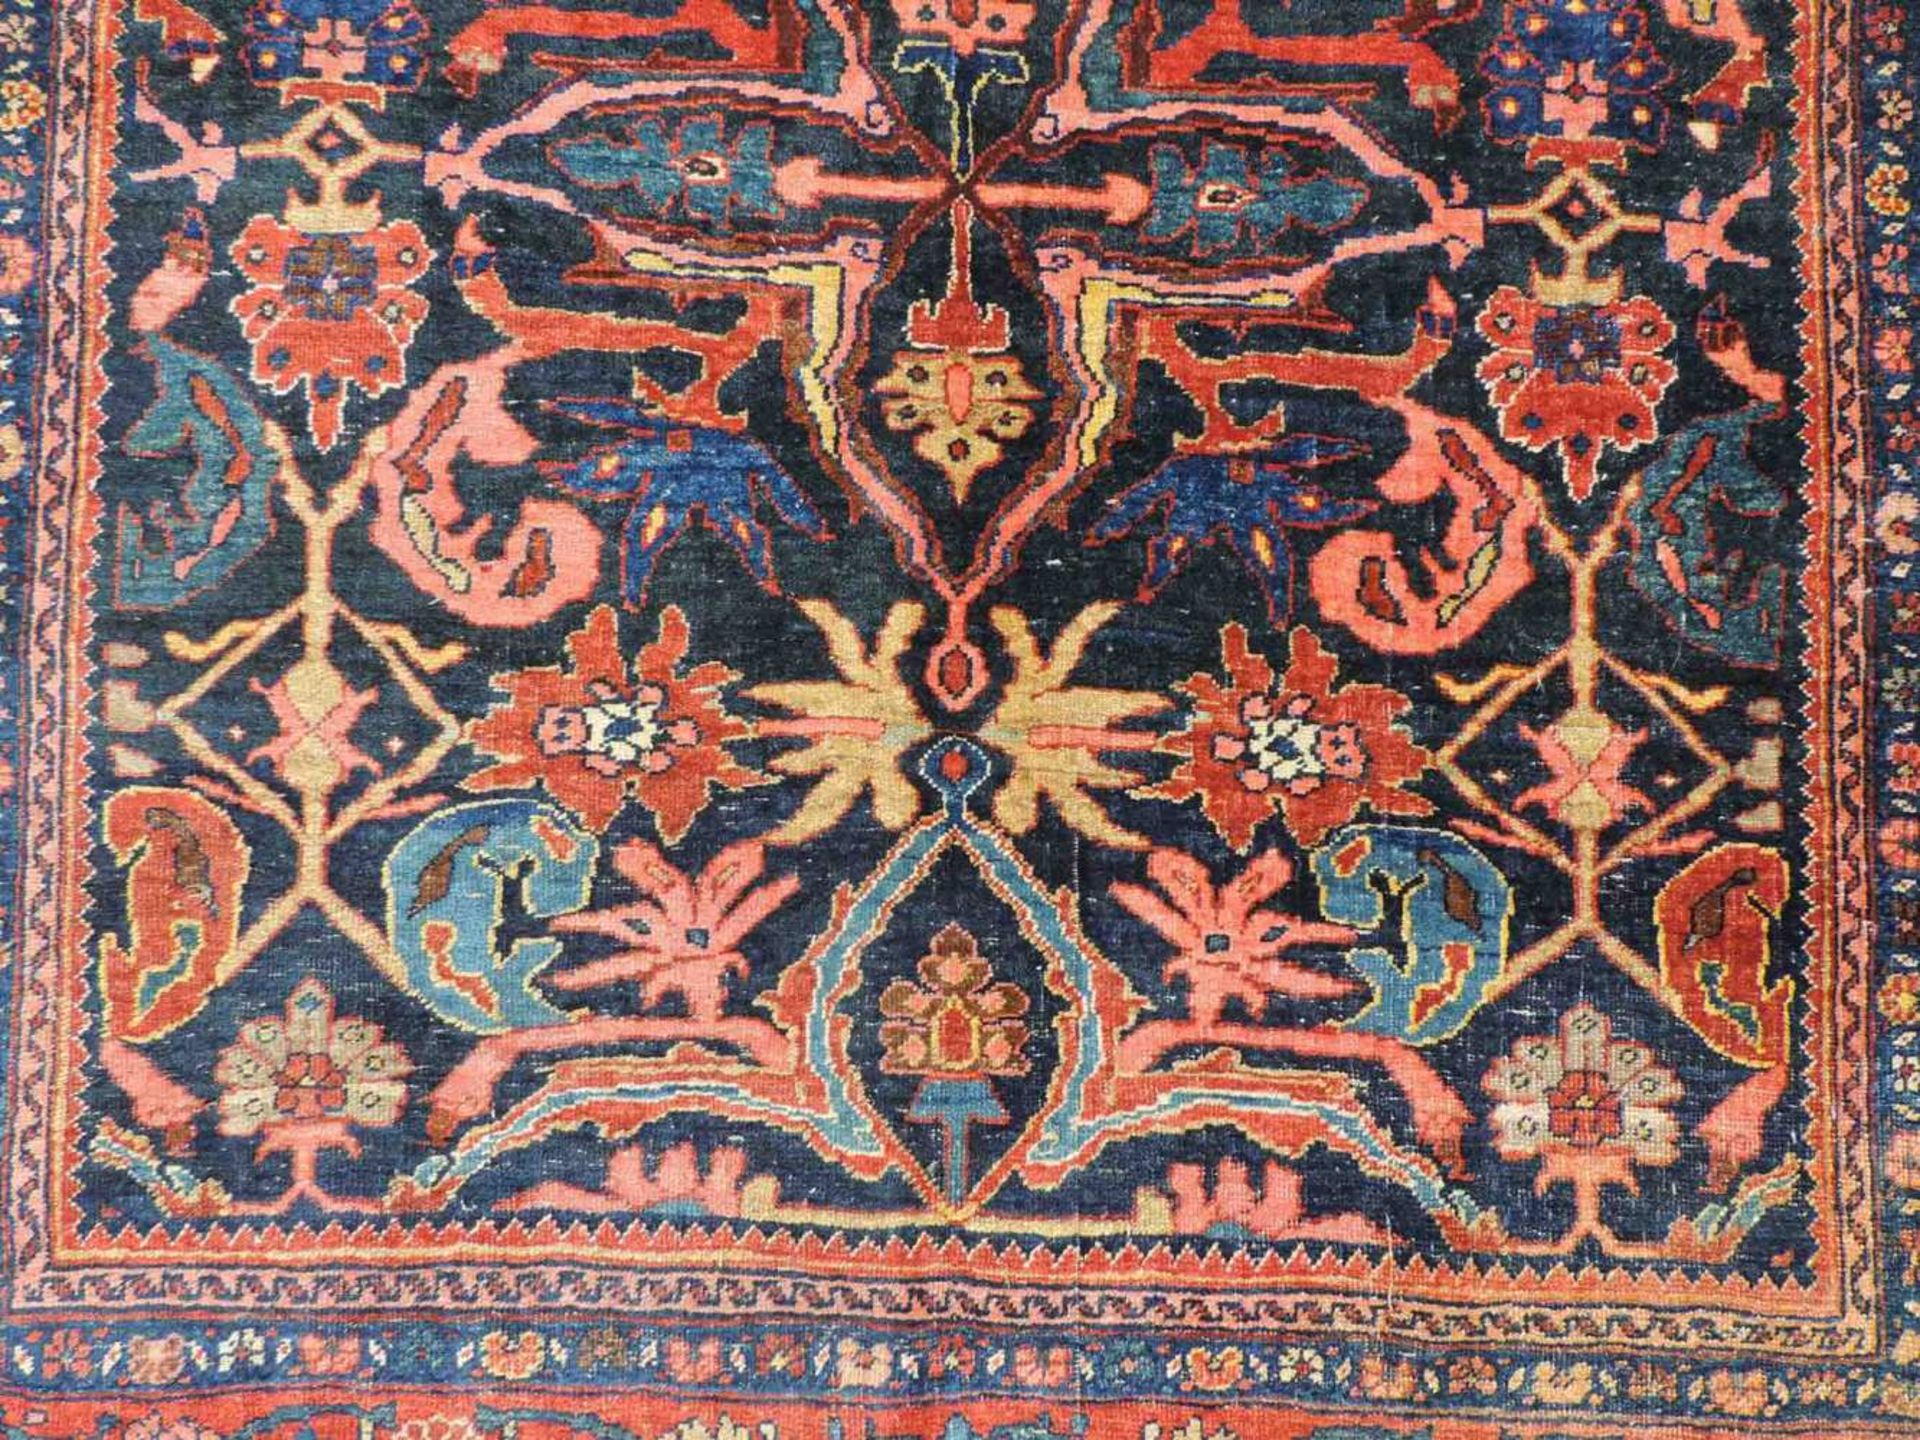 Bidjar Dorfteppich, Iran. Antik, um 1900. 214 cm x 160 cm. Handgeknüpft in Persien. Noch Wolle auf - Image 10 of 11